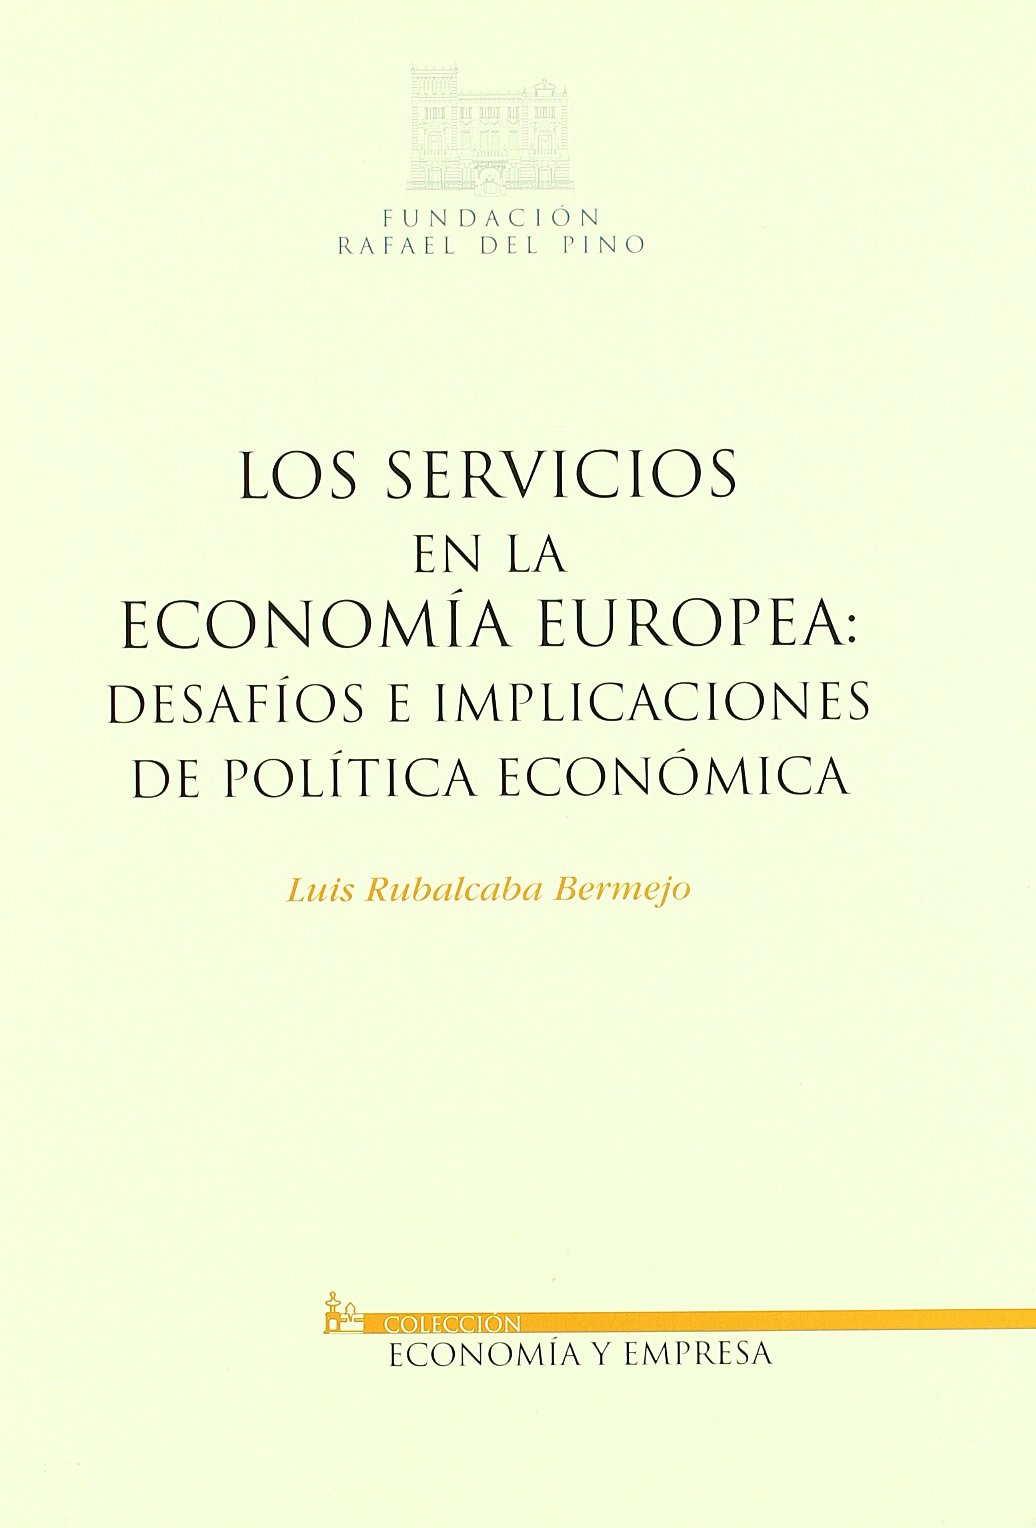 Los servicios en la economía europea